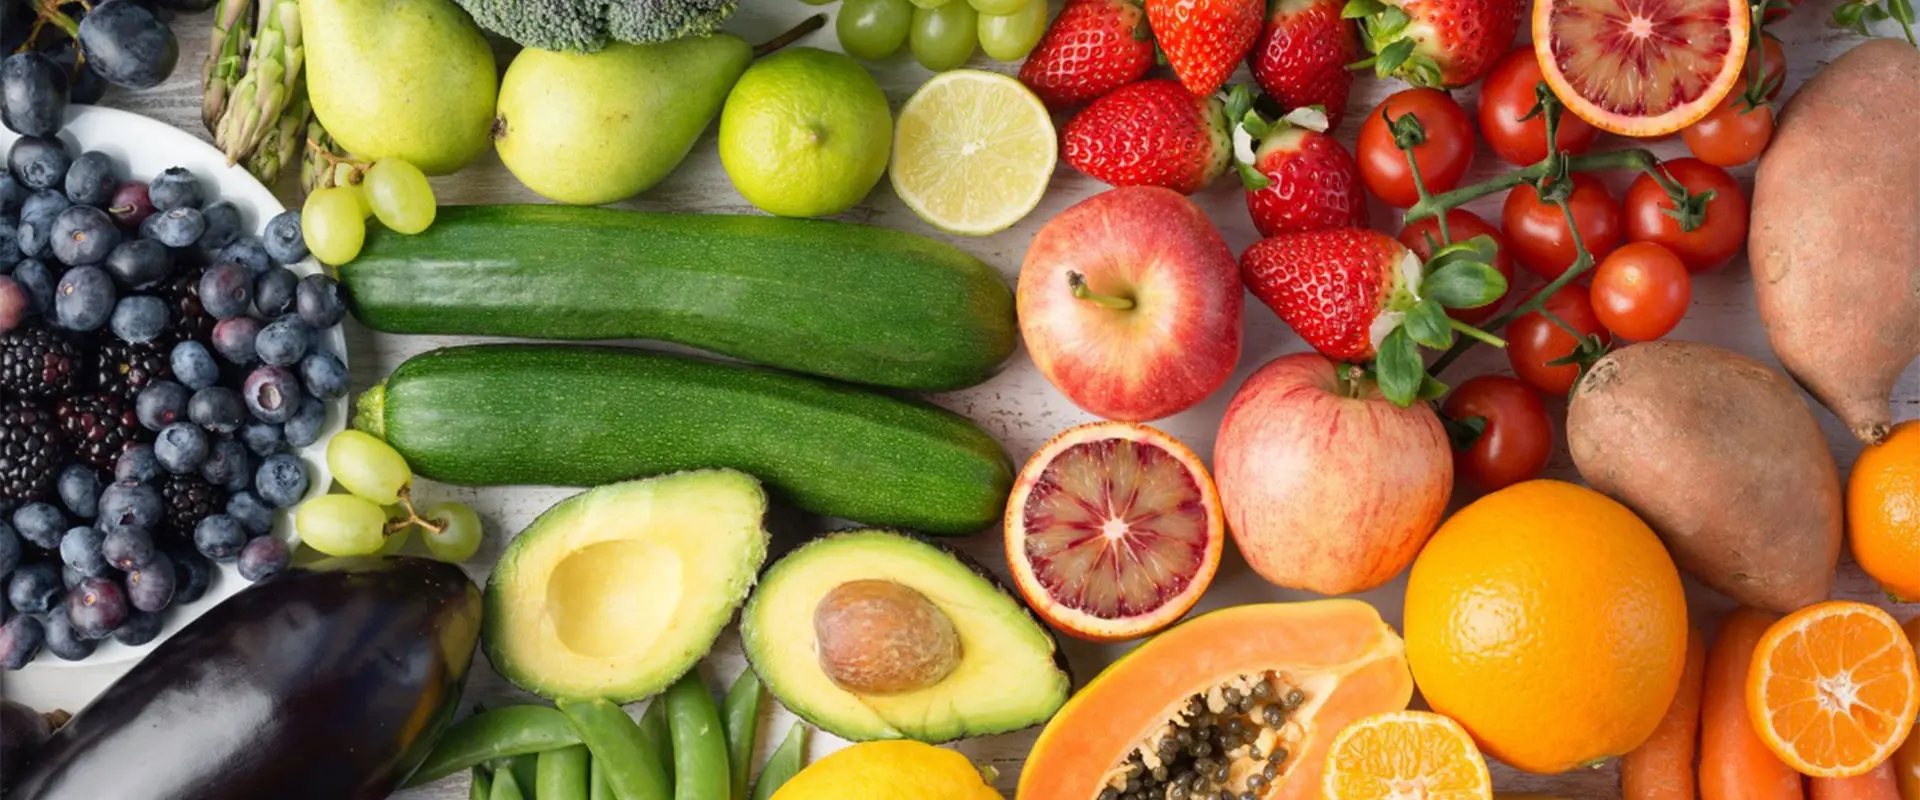 Poudre de fruits et légumes biologiques